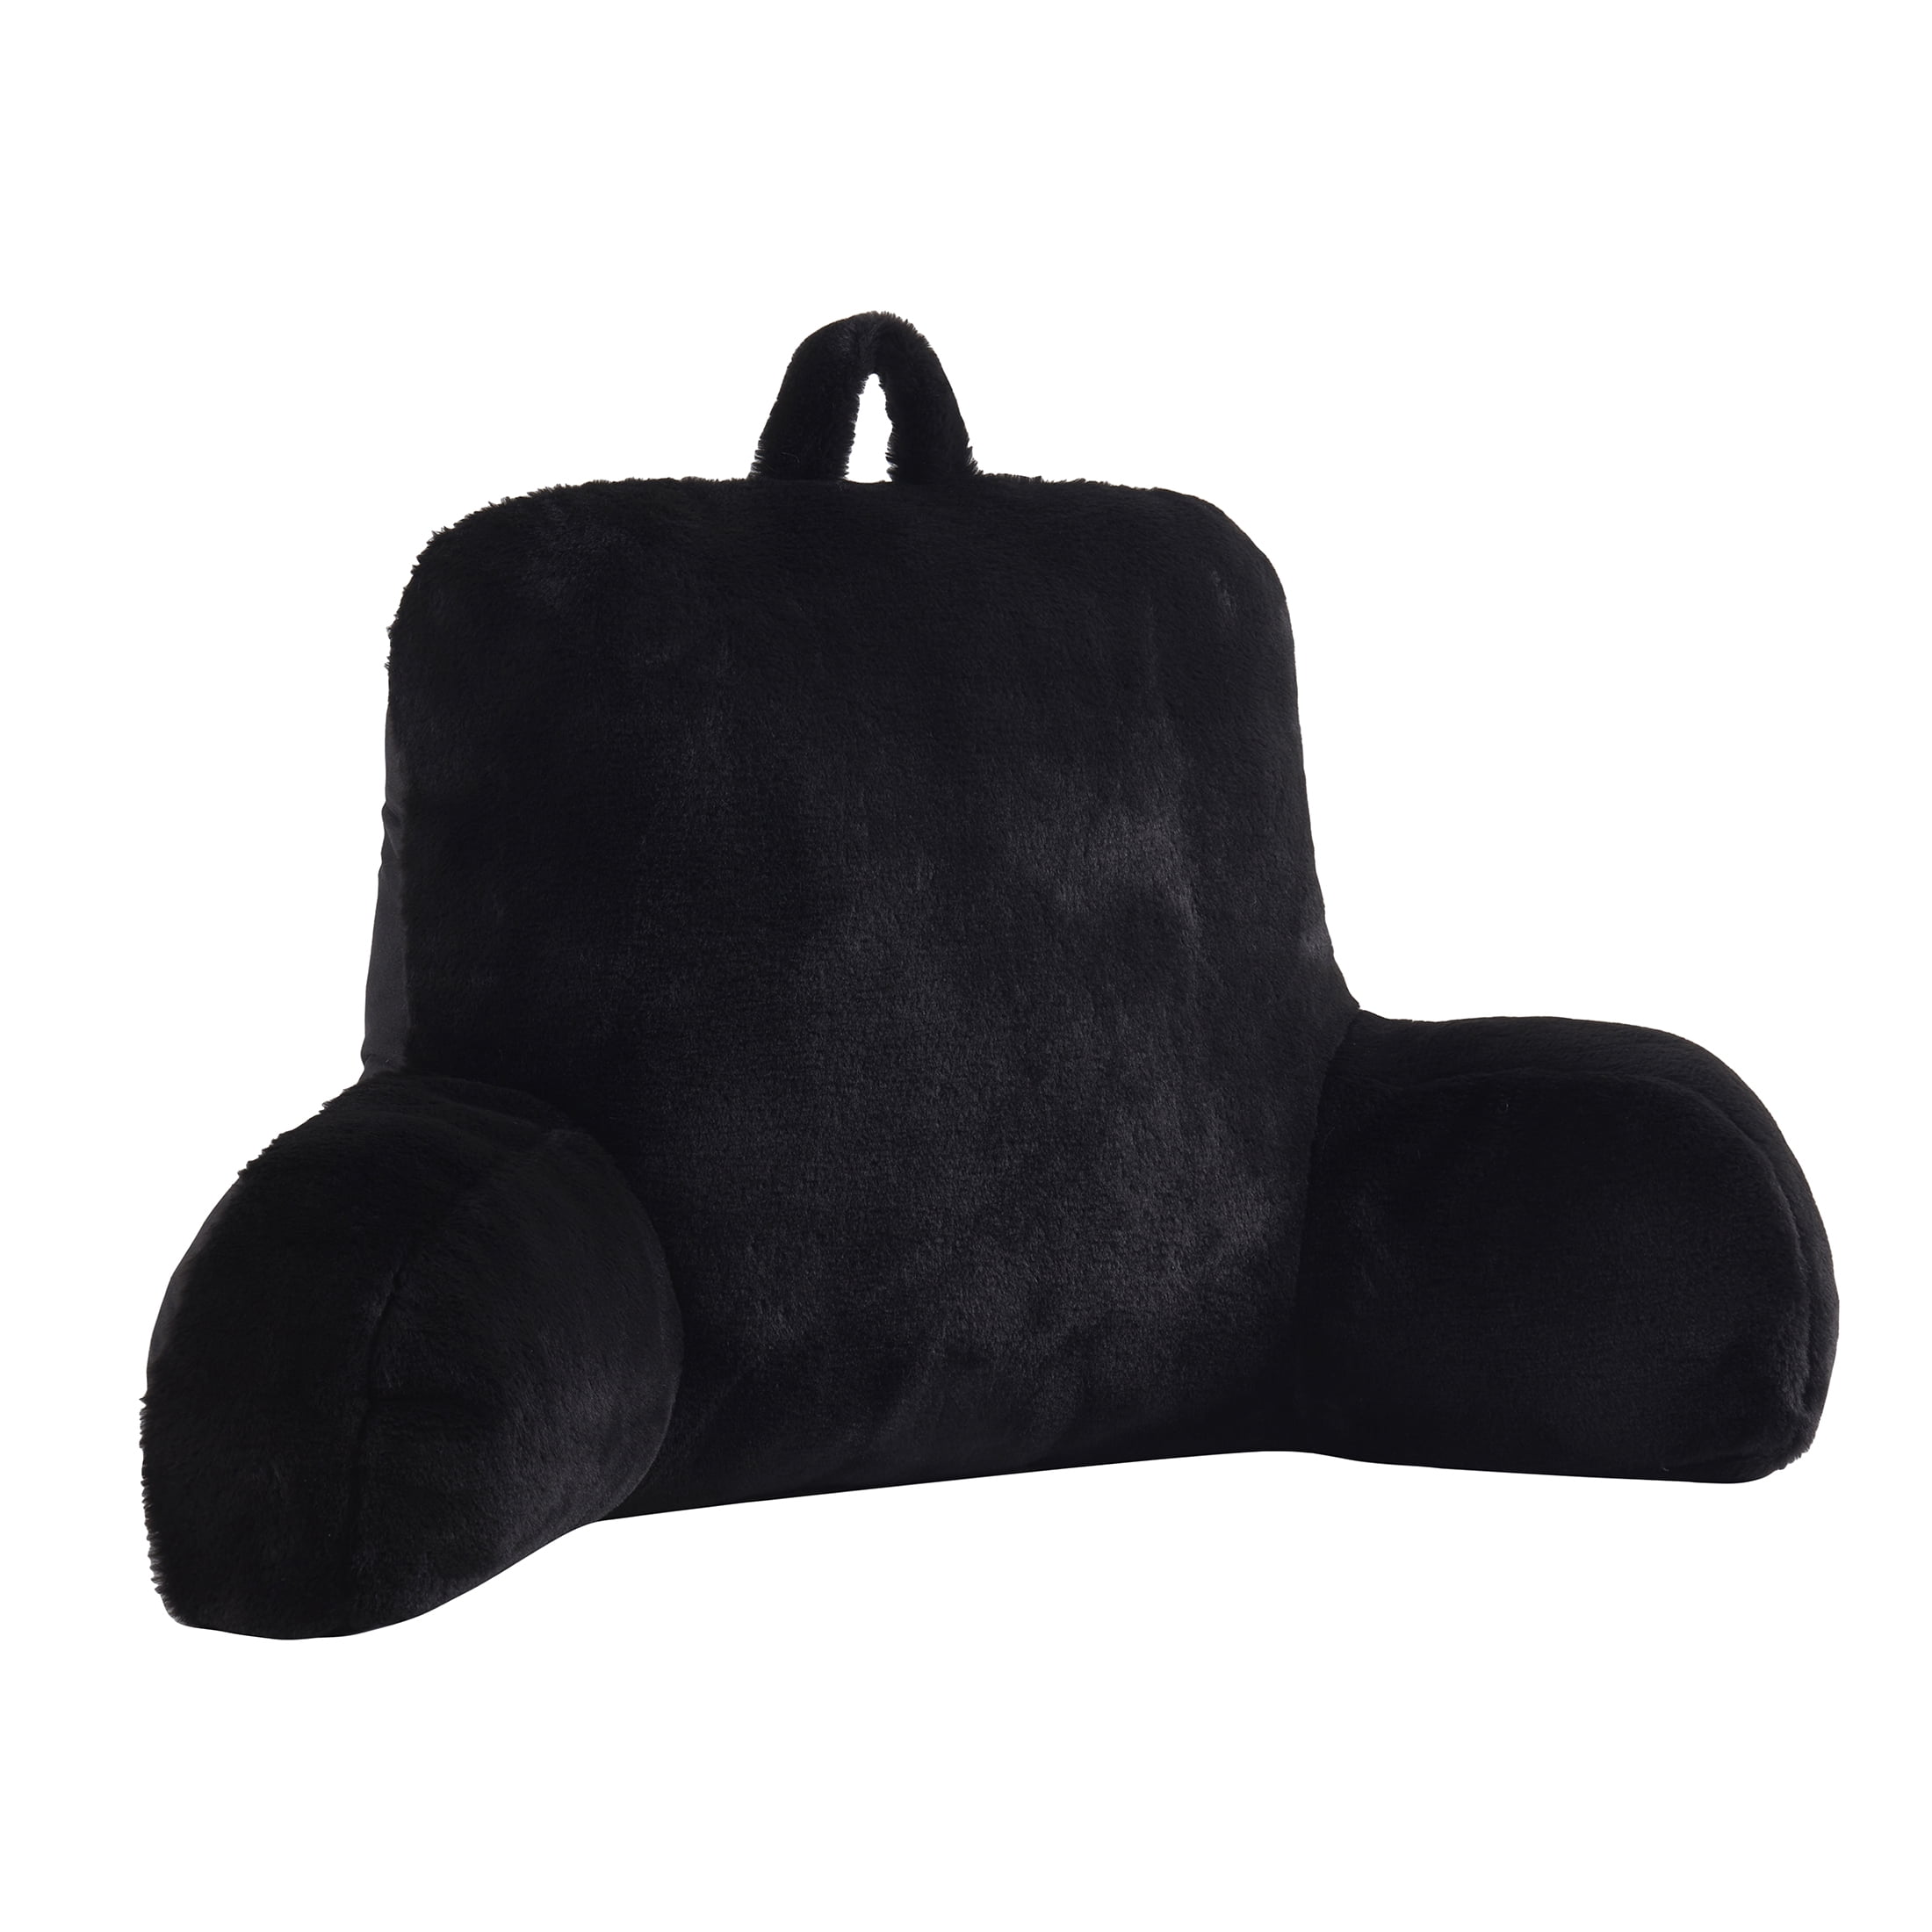 Mainstays Faux Fur Plush Backrest Pillow, Specialty Size, Aqua 